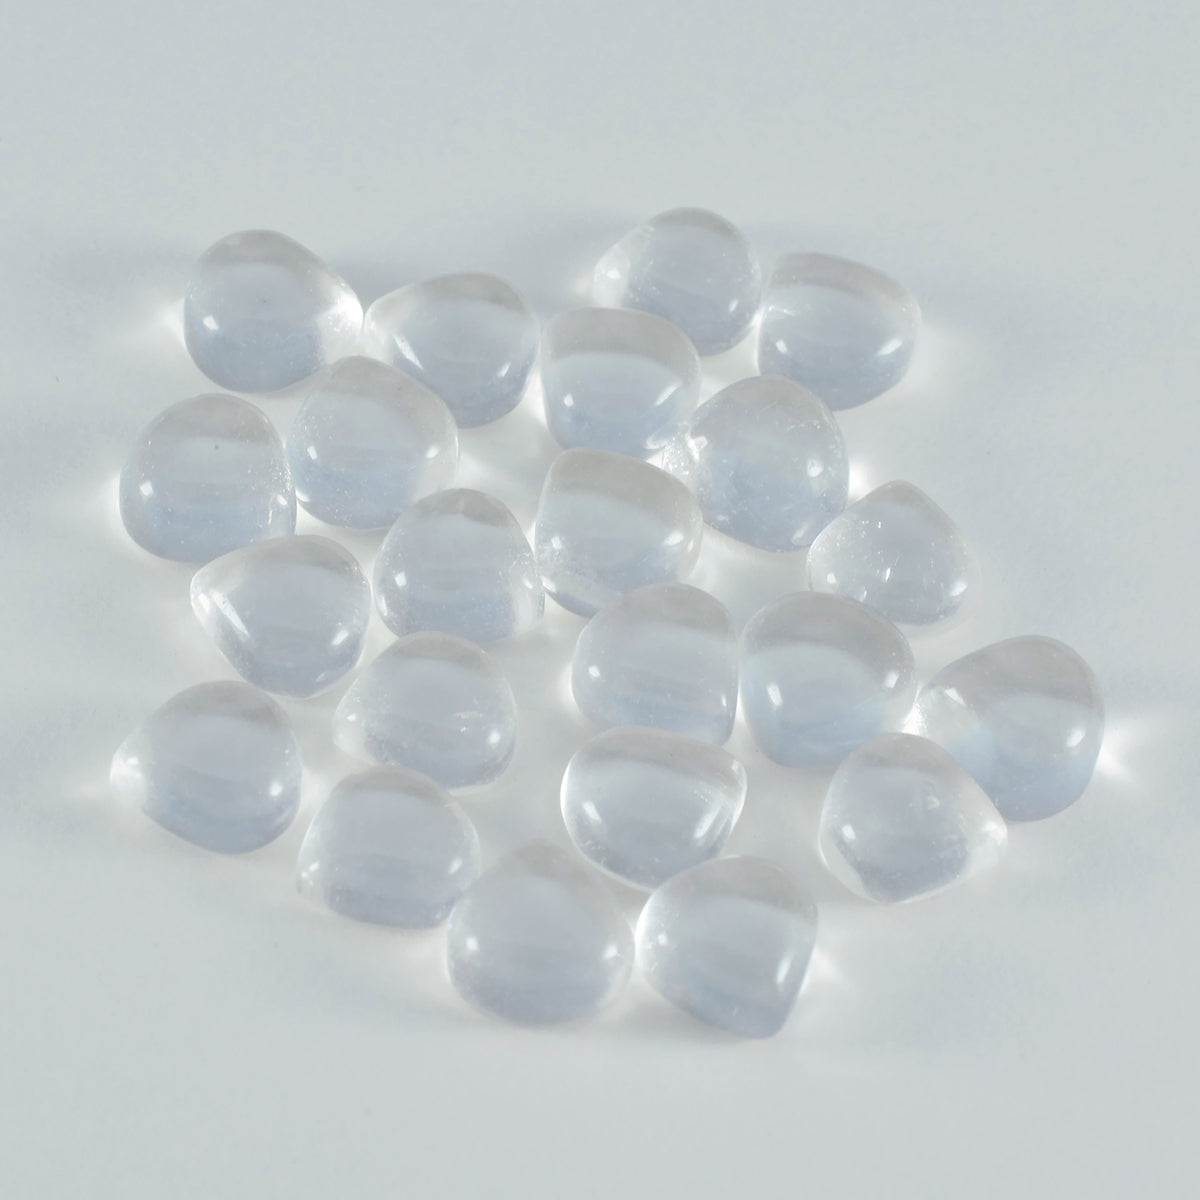 riyogems 1 шт. белый кристалл кварцевый кабошон 6x6 мм в форме сердца драгоценный камень потрясающего качества